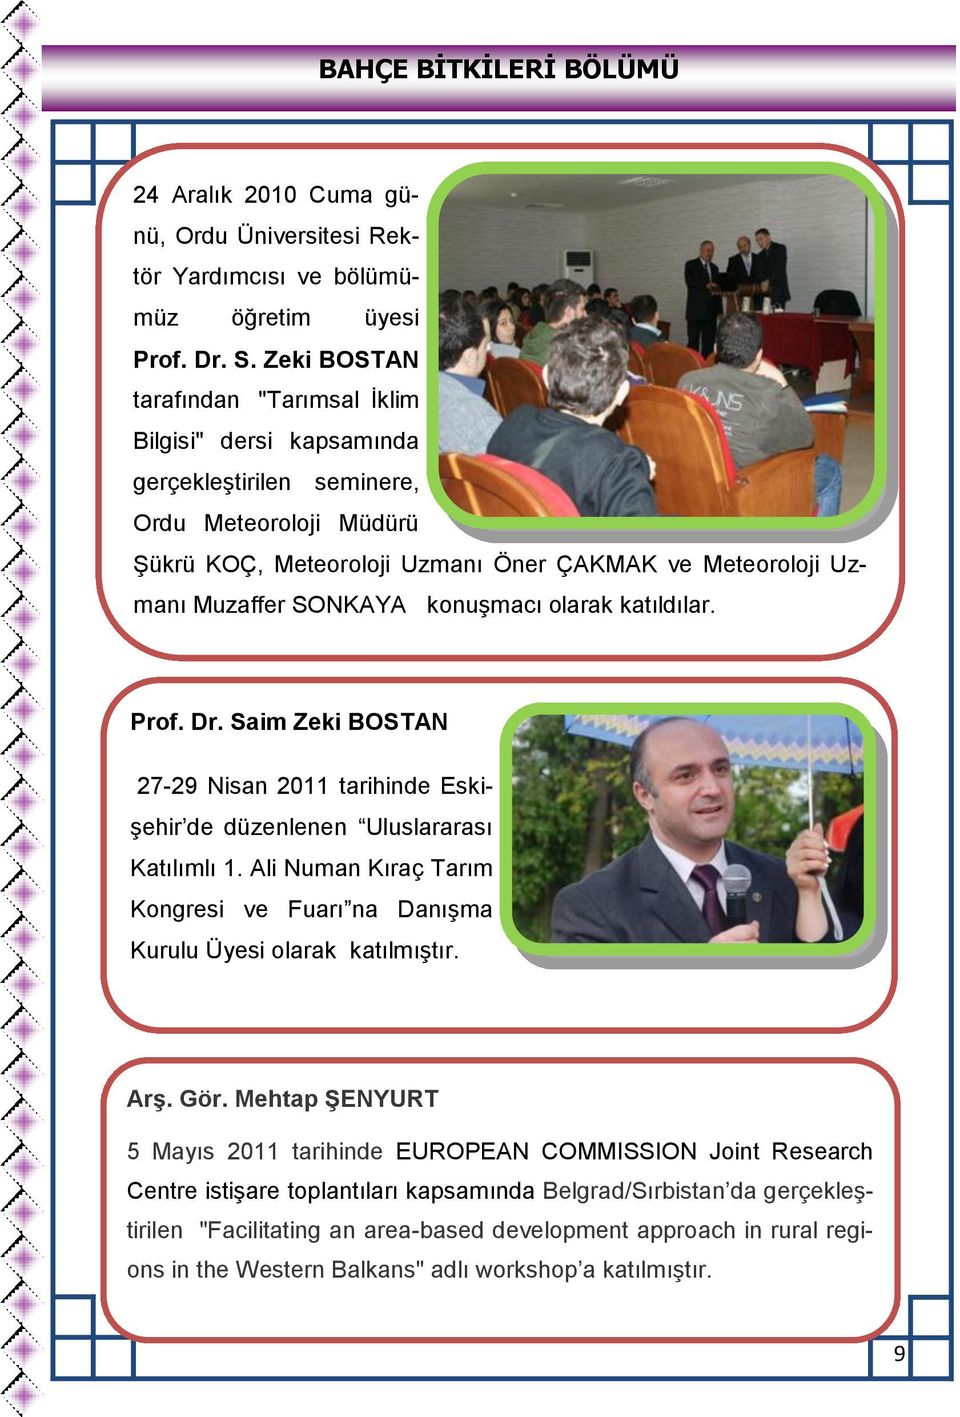 konuşmacı olarak katıldılar. Prof. Dr. Saim Zeki BOSTAN 27-29 Nisan 2011 tarihinde Eskişehir de düzenlenen Uluslararası Katılımlı 1.